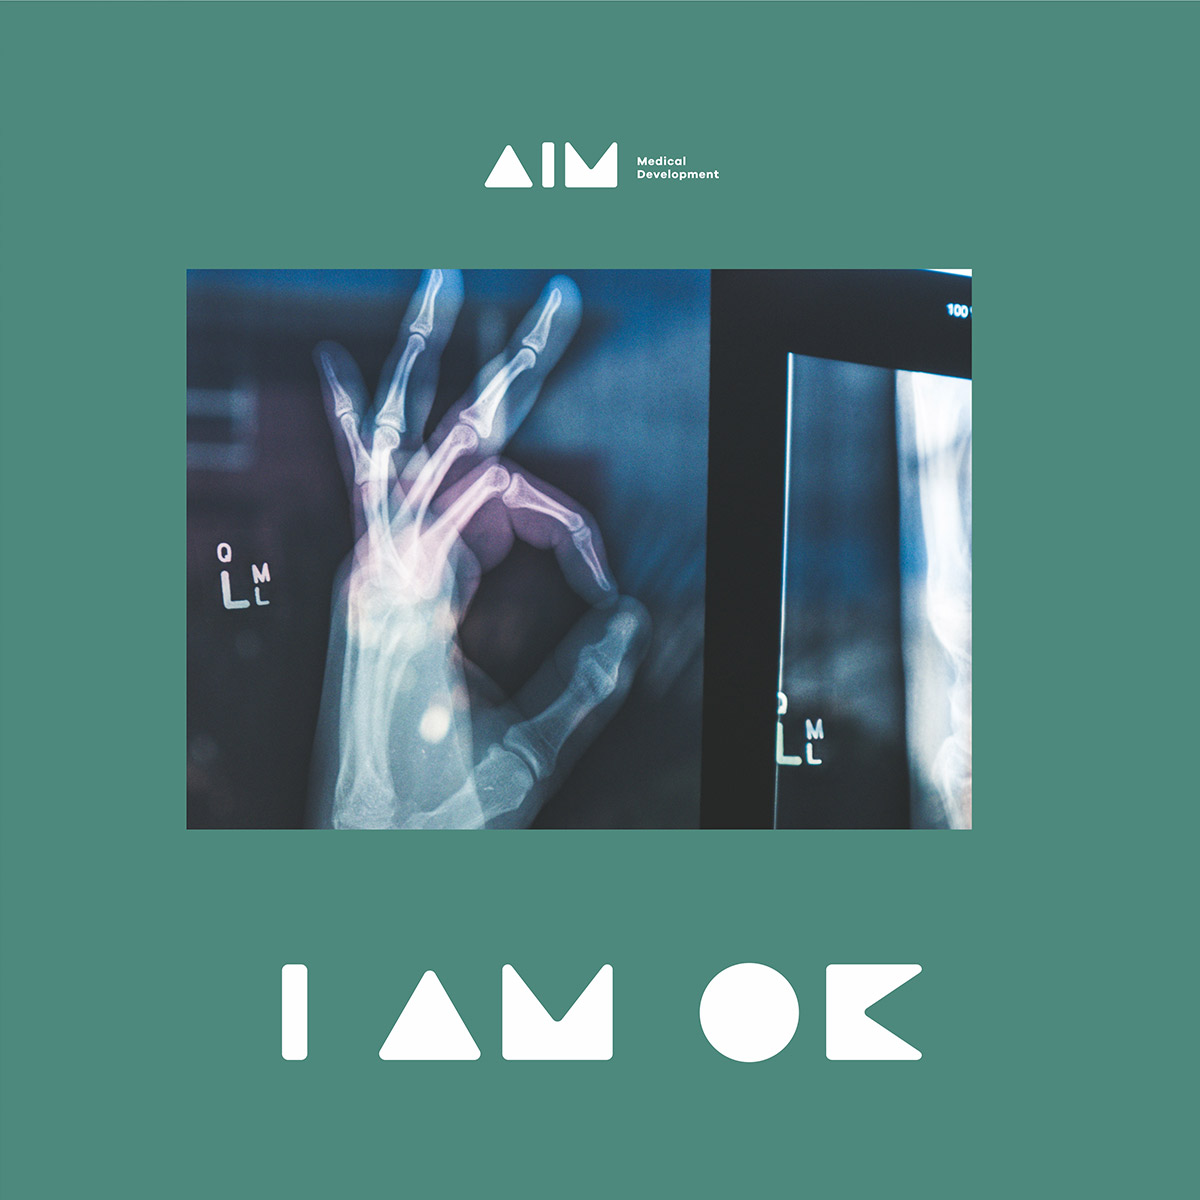 aim_logo